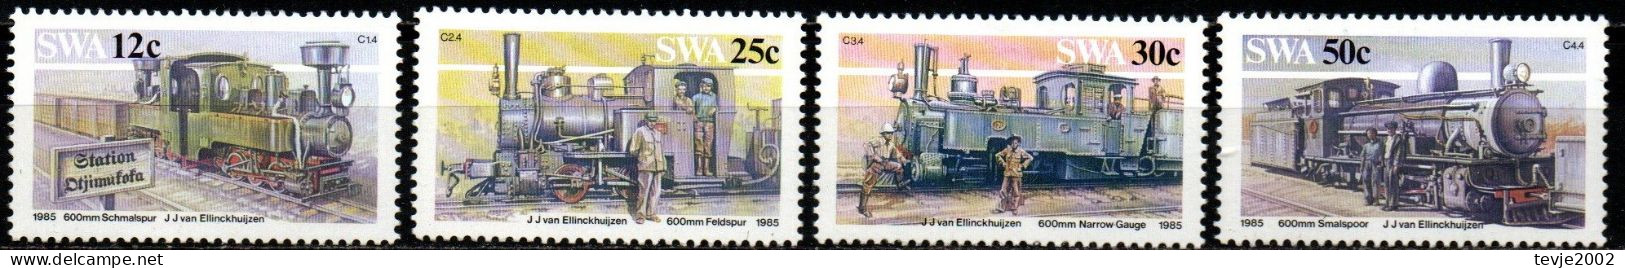 Südwestafrika 1985 - Mi.Nr. 575 - 578 - Postfrisch MNH - Eisenbahnen Railways Lokomotiven Locomotives - Trains